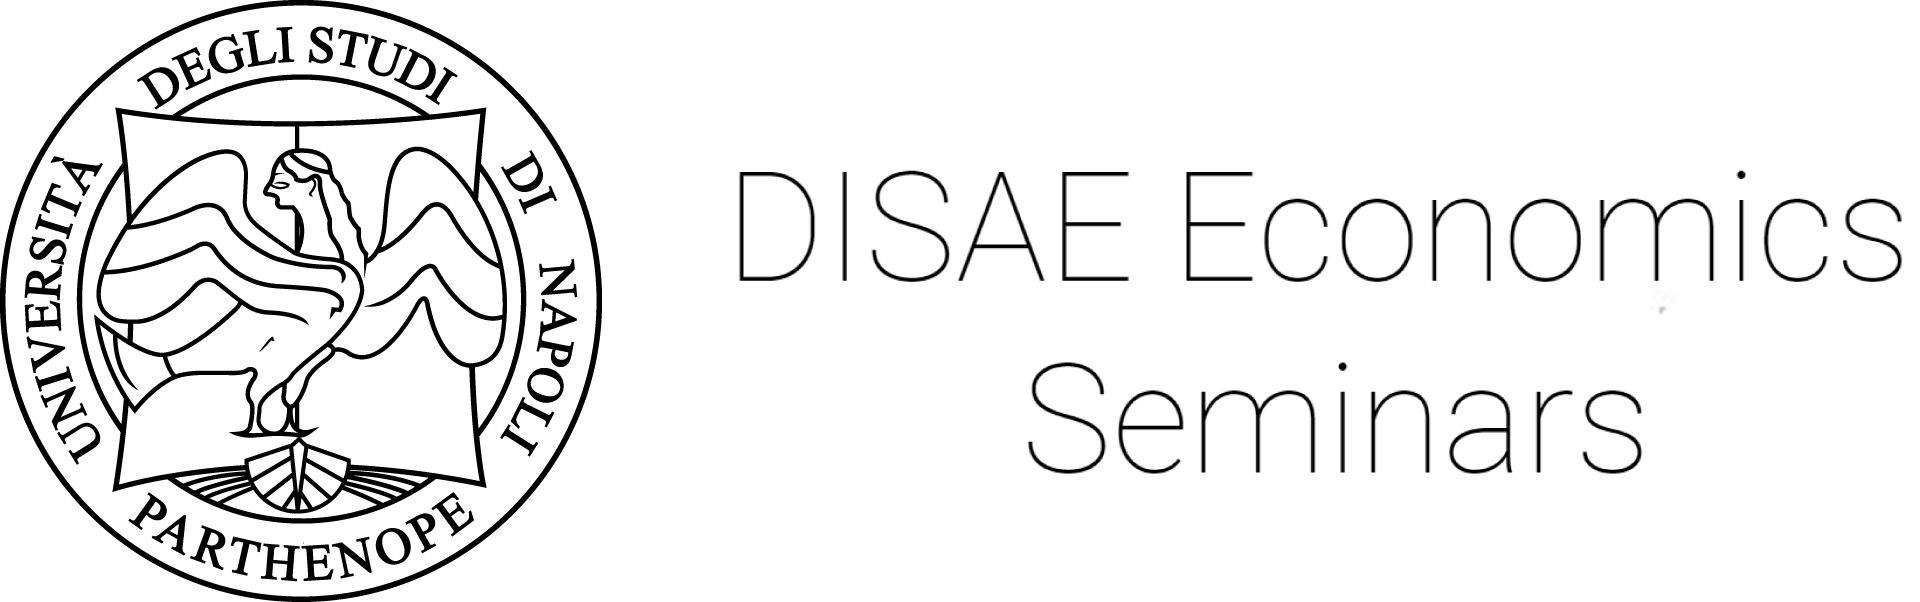 DISAE-Economics-Seminar